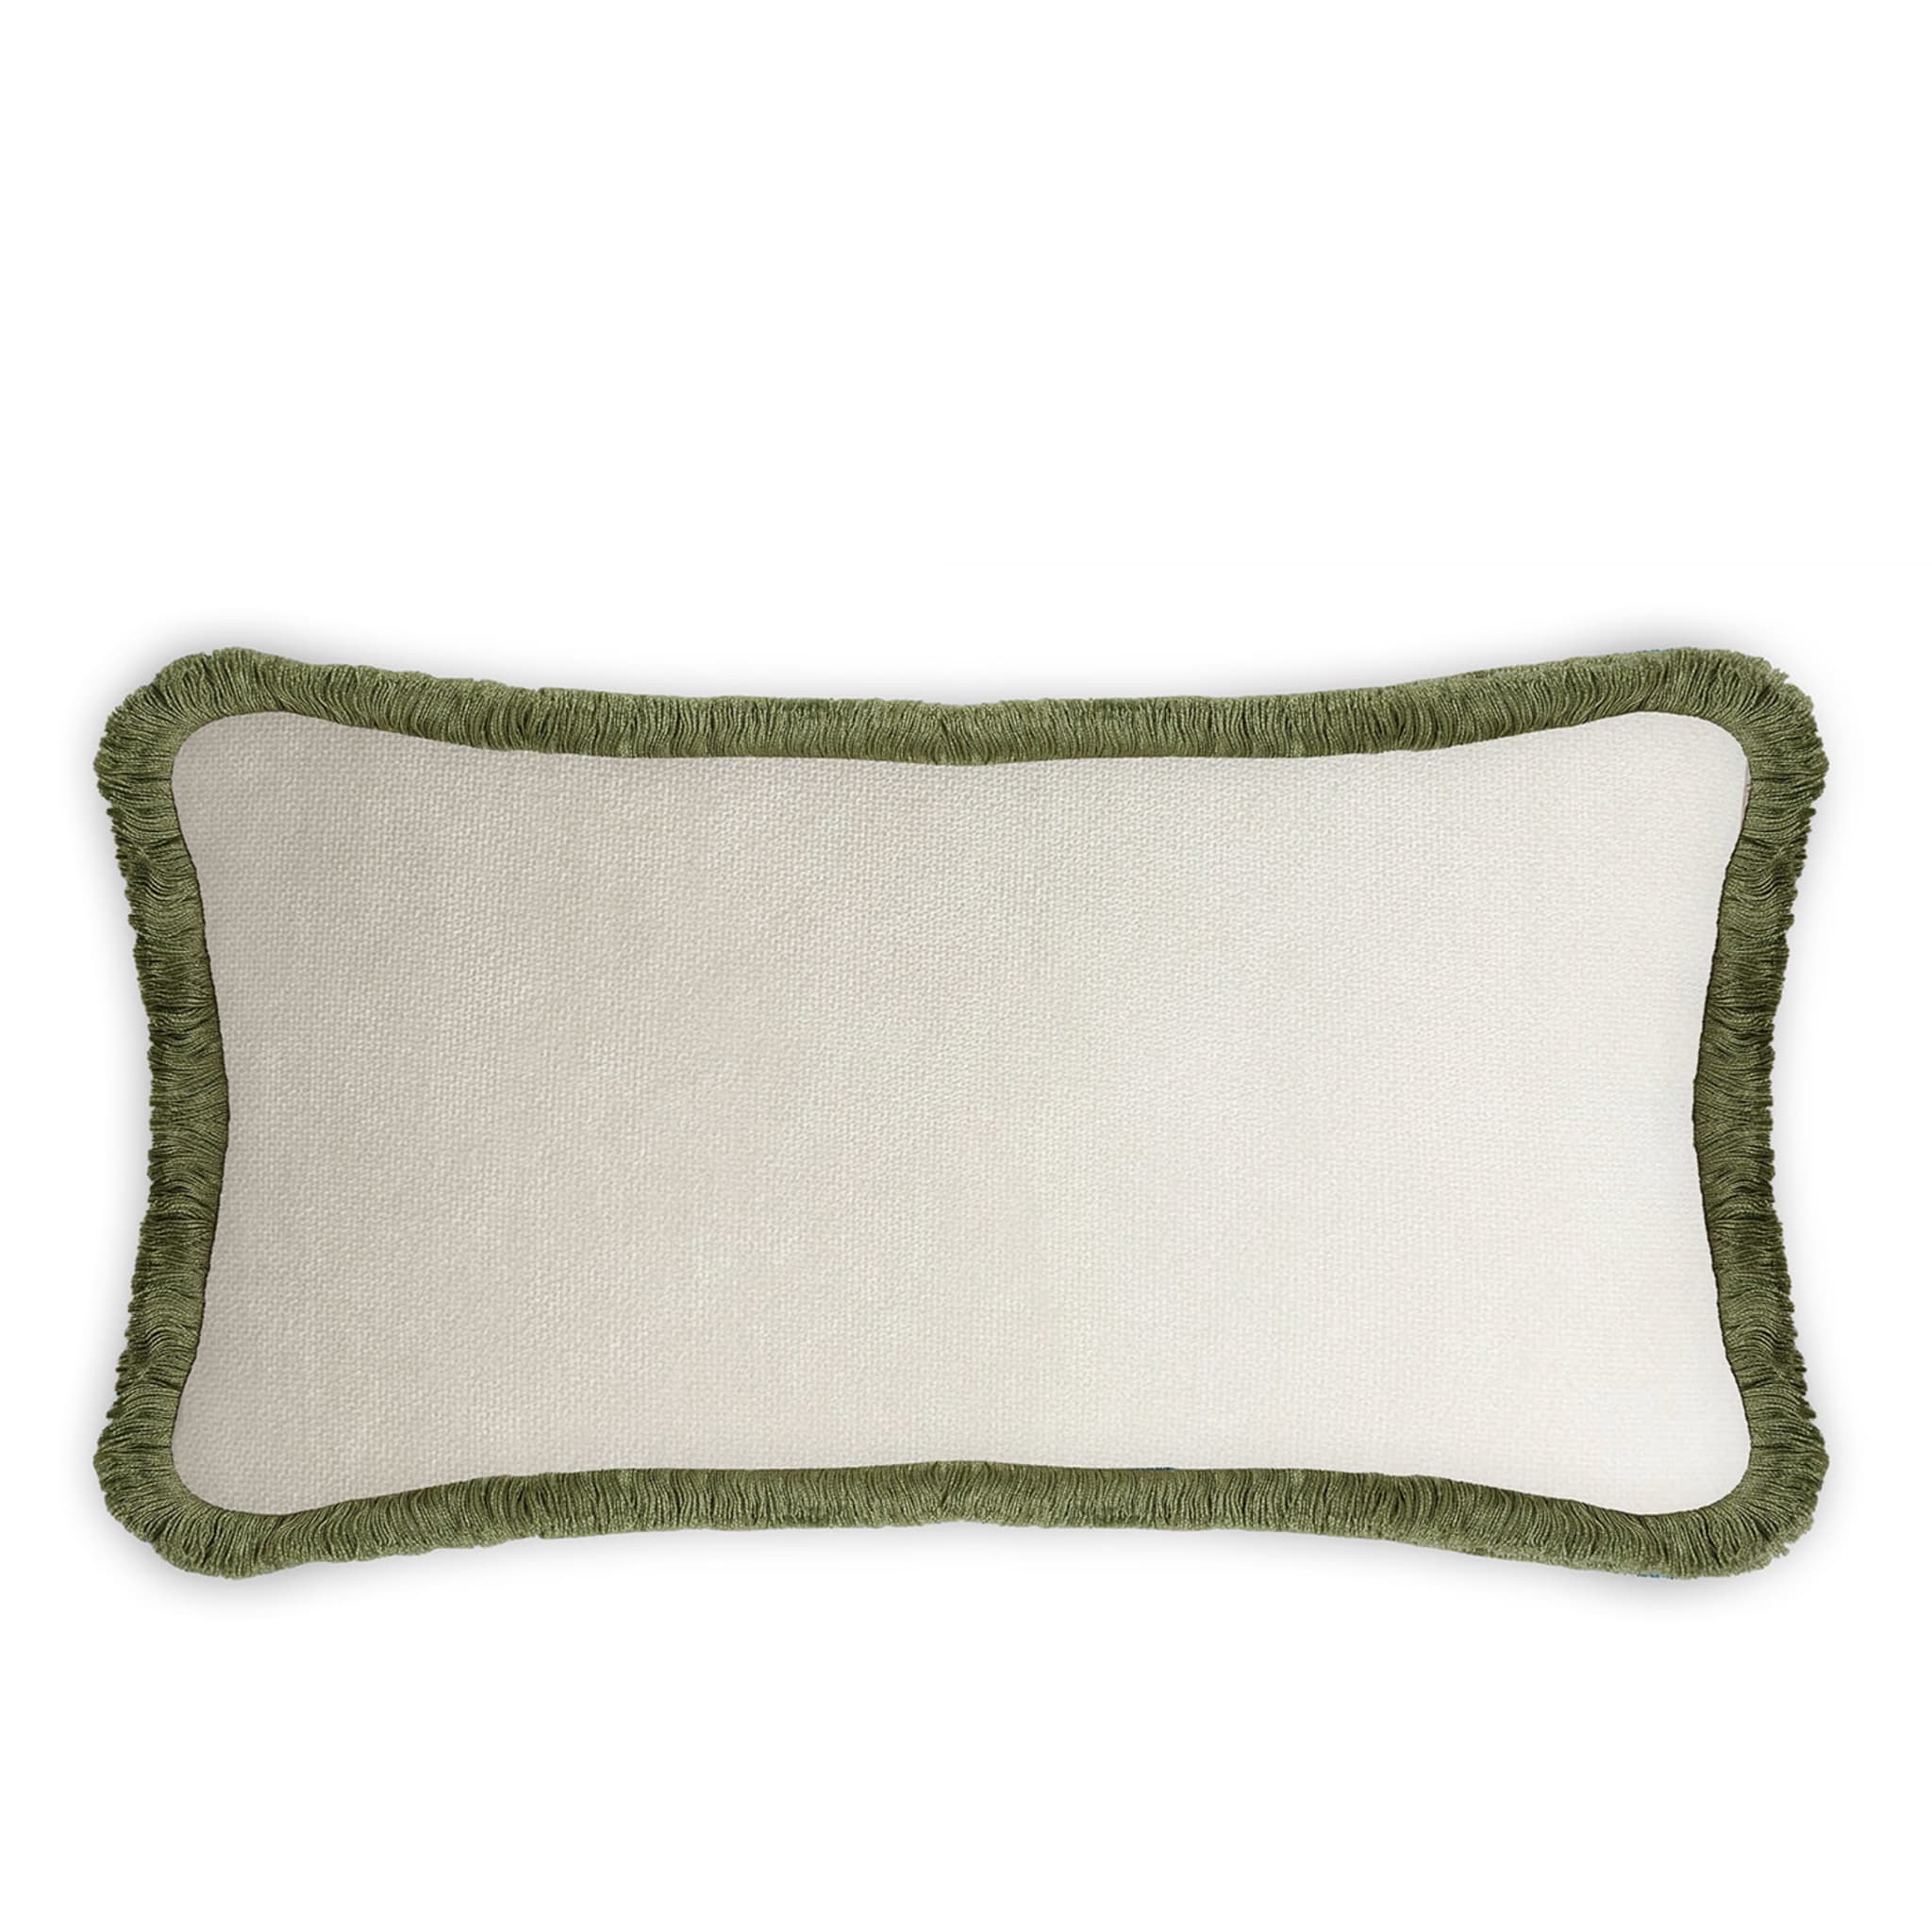 Cuscino Happy in velluto verde e bianco a forma di coppia rettangolare - Vista alternativa 1